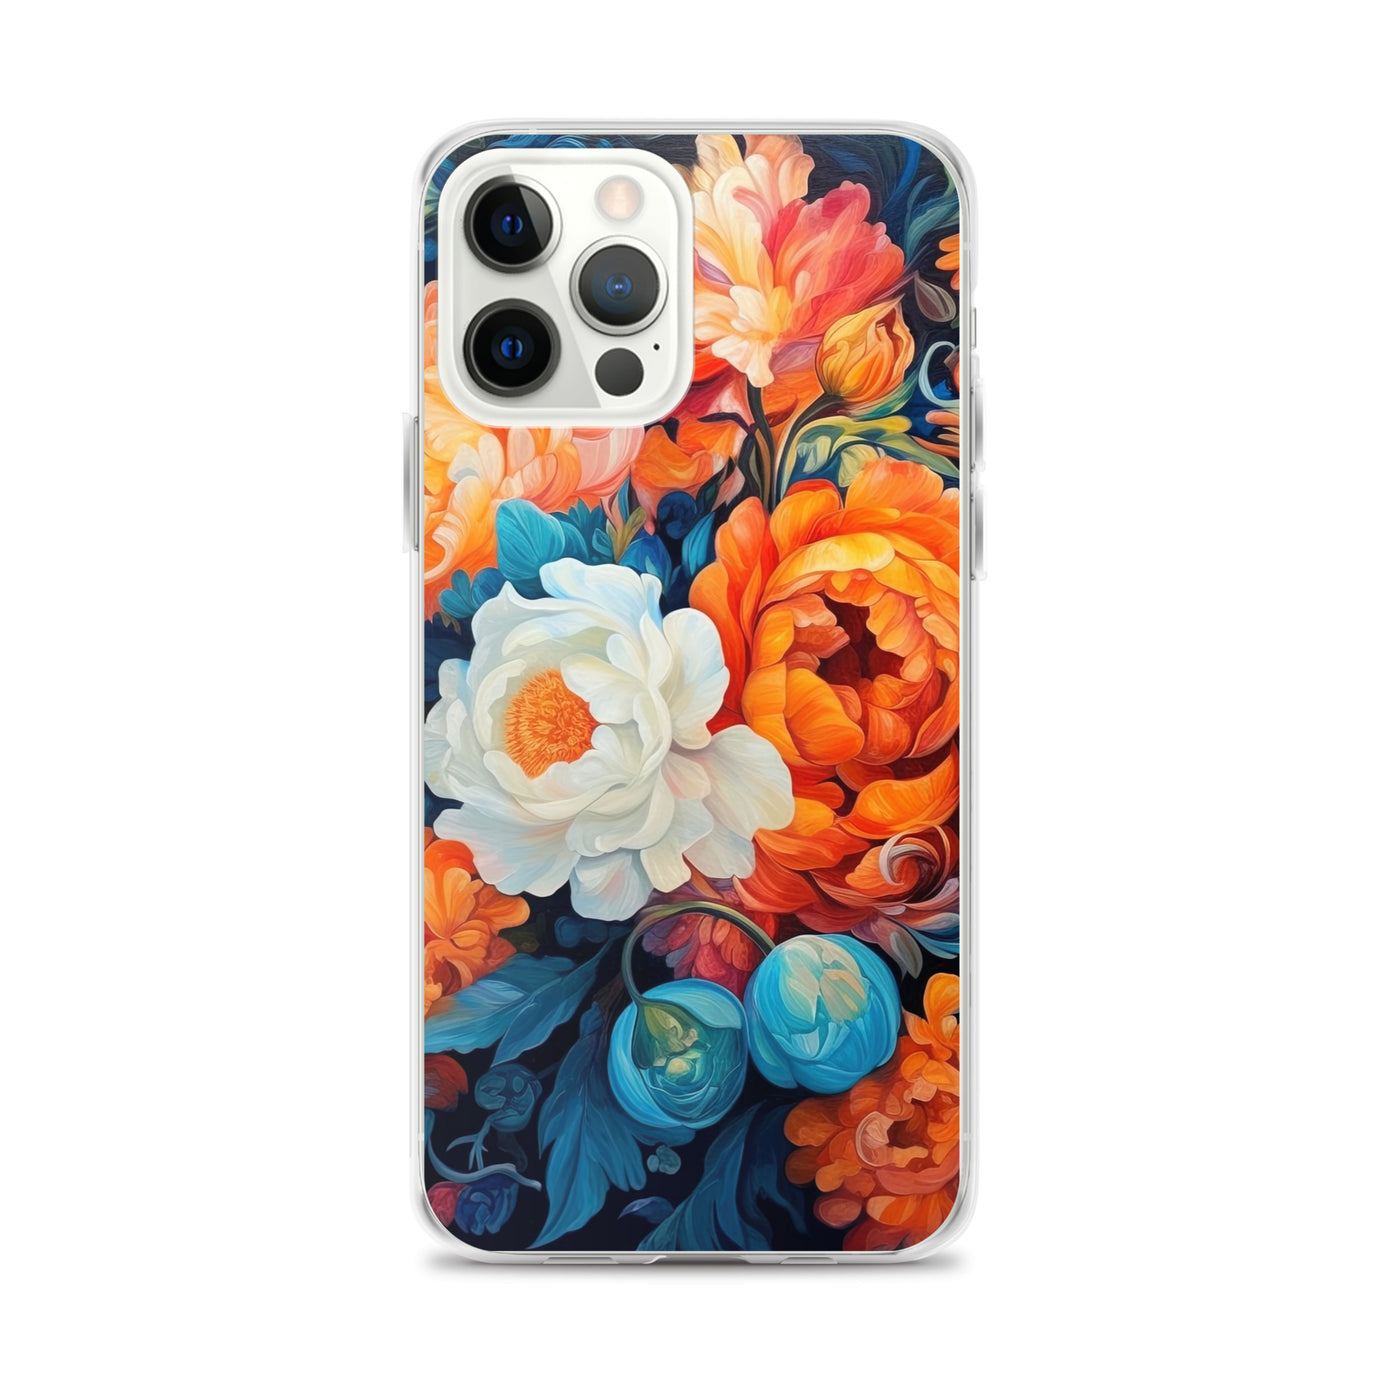 Bunte Blumen - Schöne Malerei - iPhone Schutzhülle (durchsichtig) camping xxx iPhone 12 Pro Max